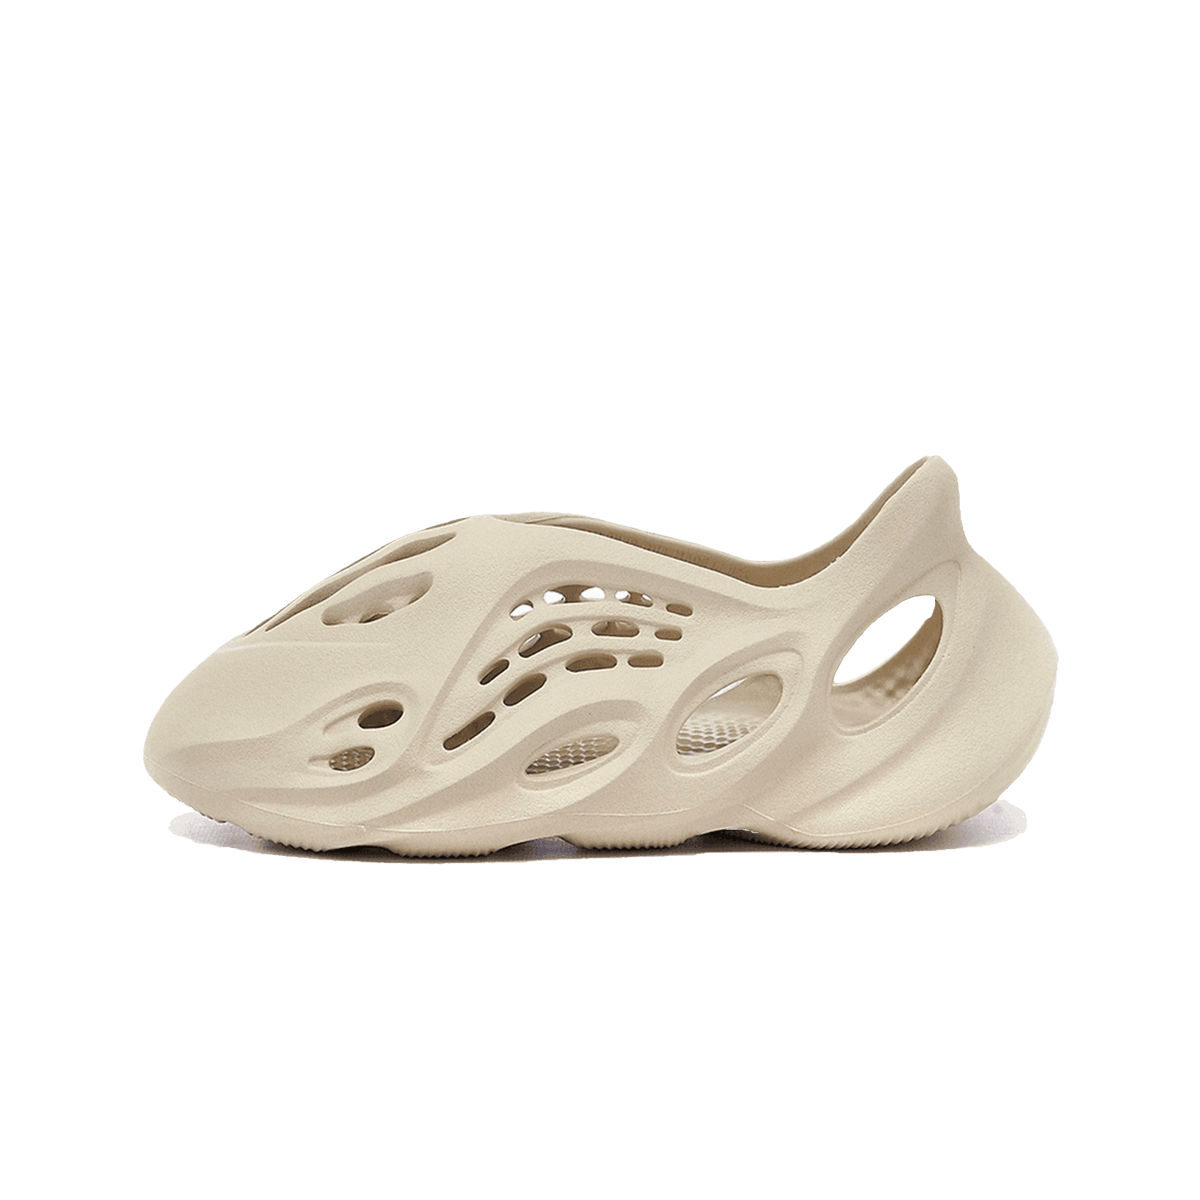 adidas yeezy foam runner sand grey GW7230 1